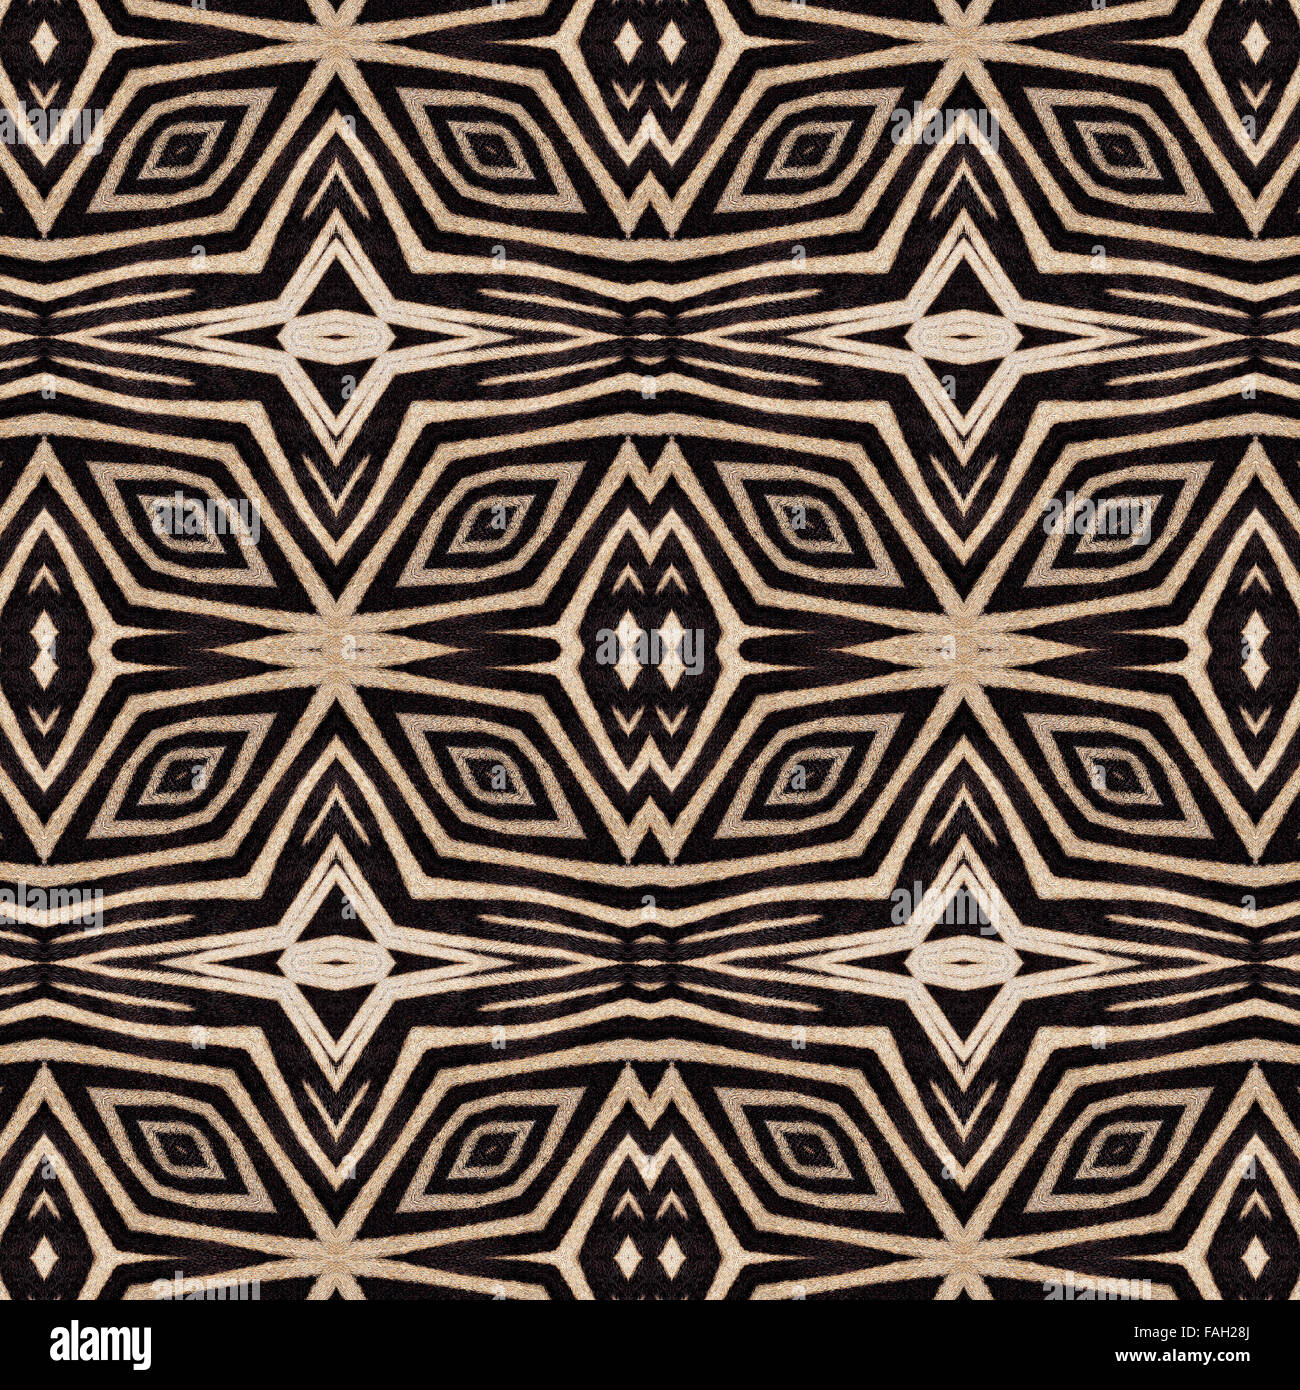 Zusammenfassung Hintergrund der Zebrastreifen. Schöne orientalische Musterdesign von Mutter Natur gemacht. Stockfoto